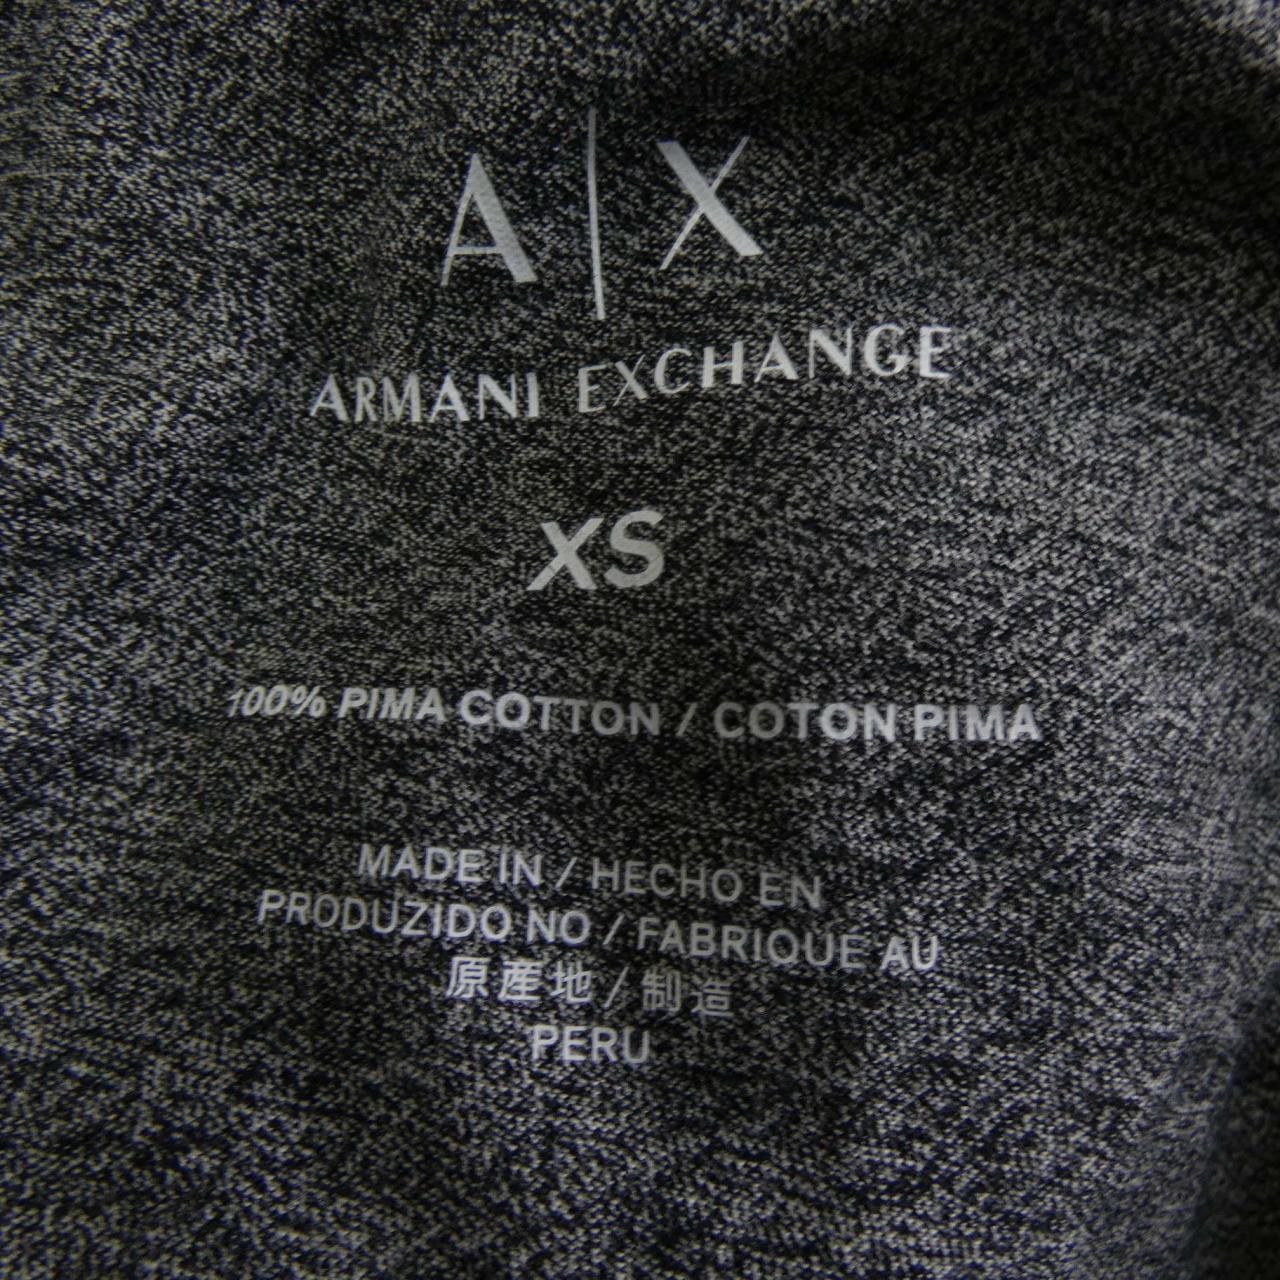 ARMANI Exchange ARMANI EXCHANGE上衣